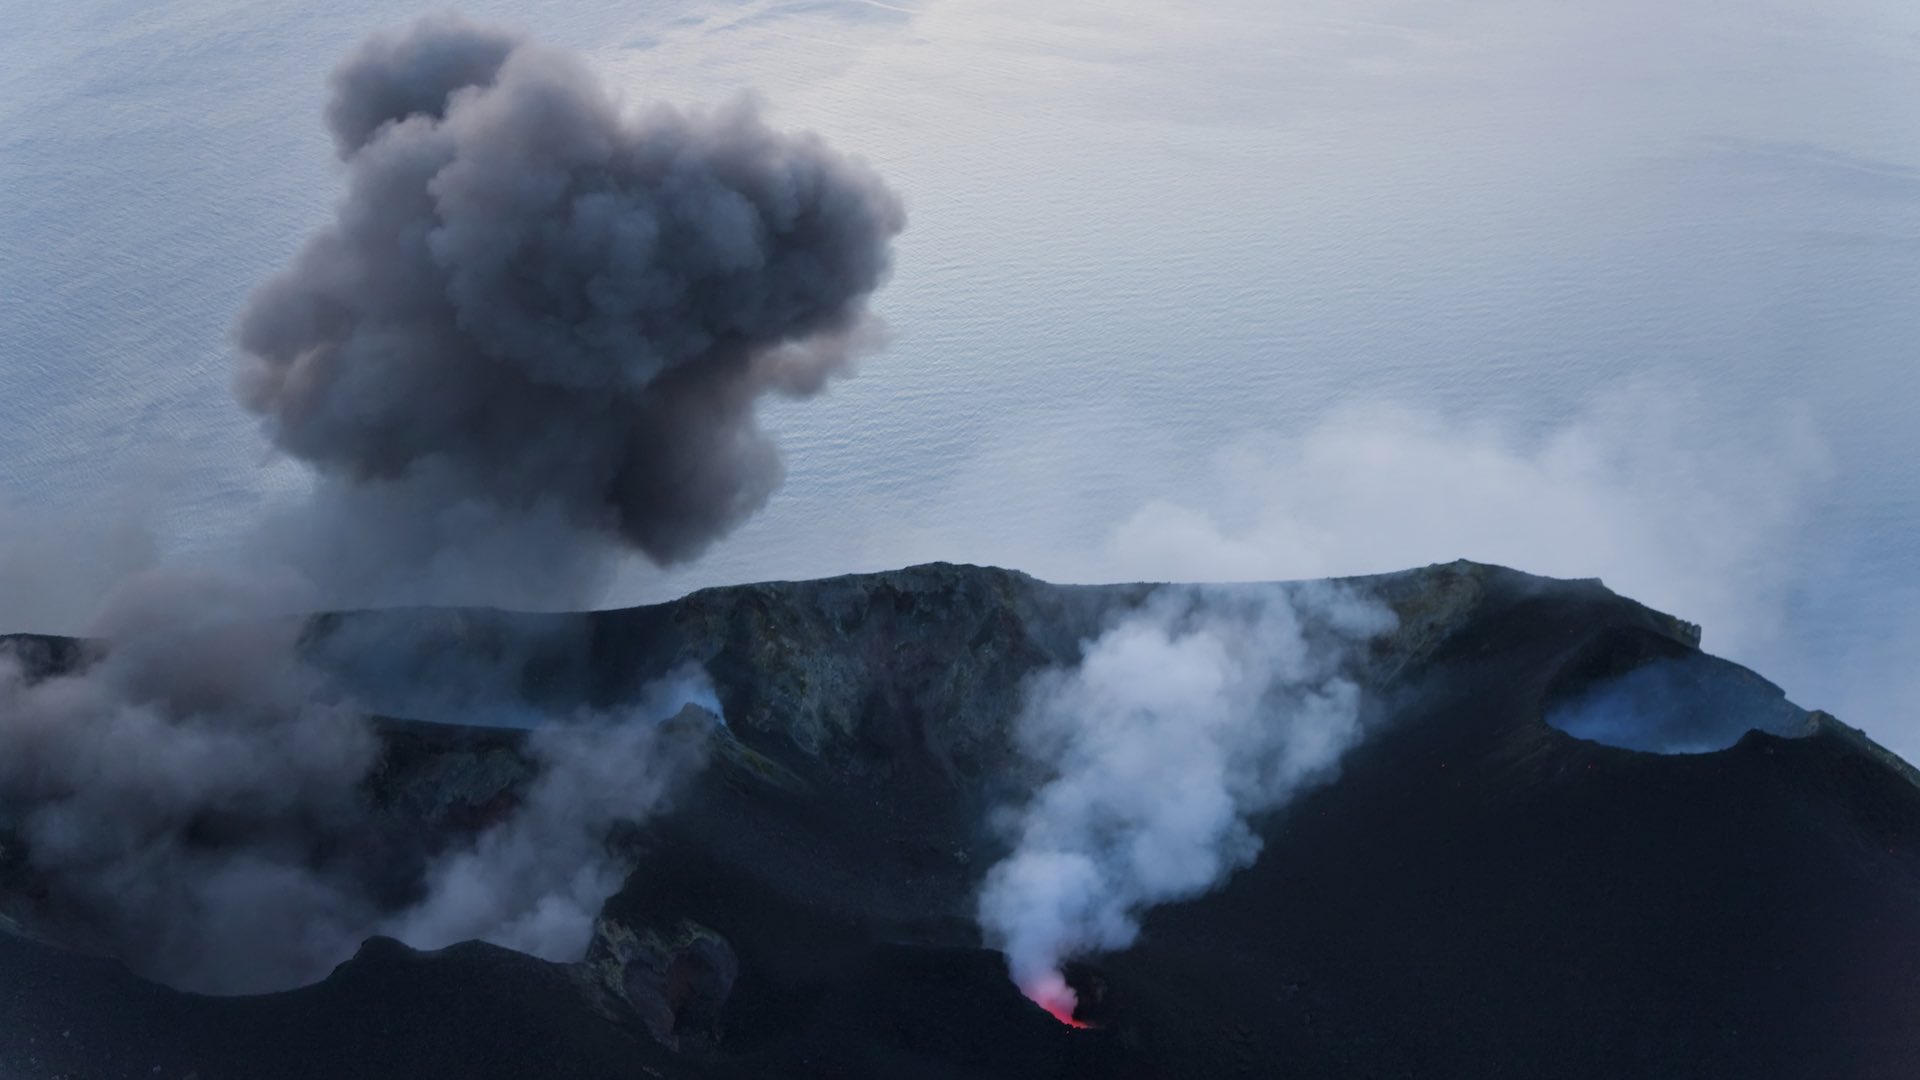 Volcano ya La Cumbre inawasha katika visiwa vya Galapagos